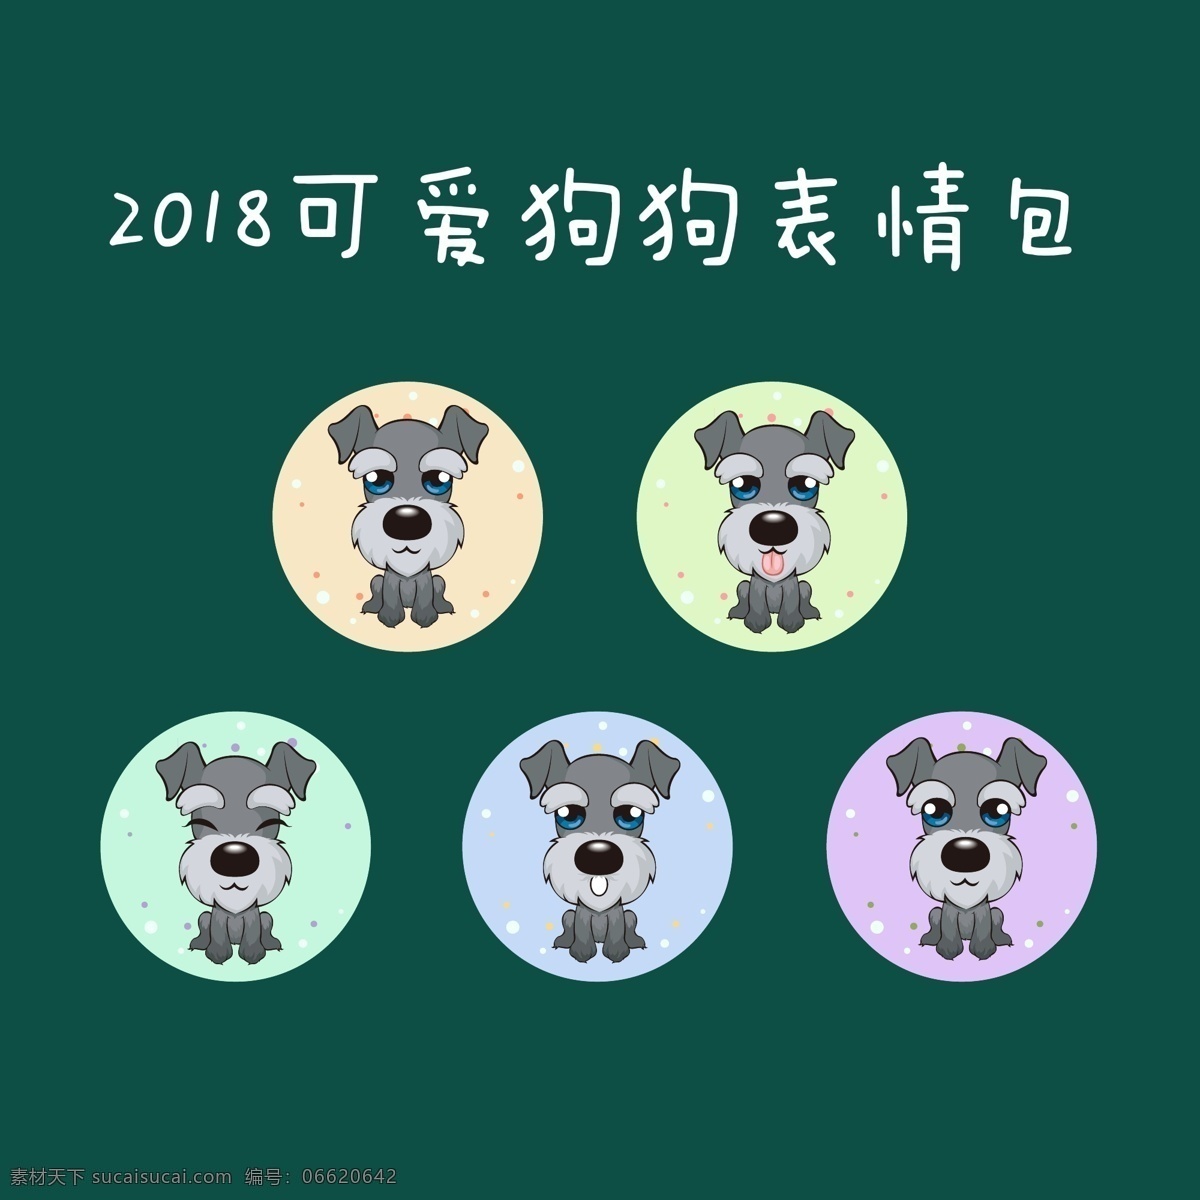 2018 可爱 狗 表情 包 系列 狗狗 表情包 彩色 插画 雪纳瑞 动漫动画 动漫人物